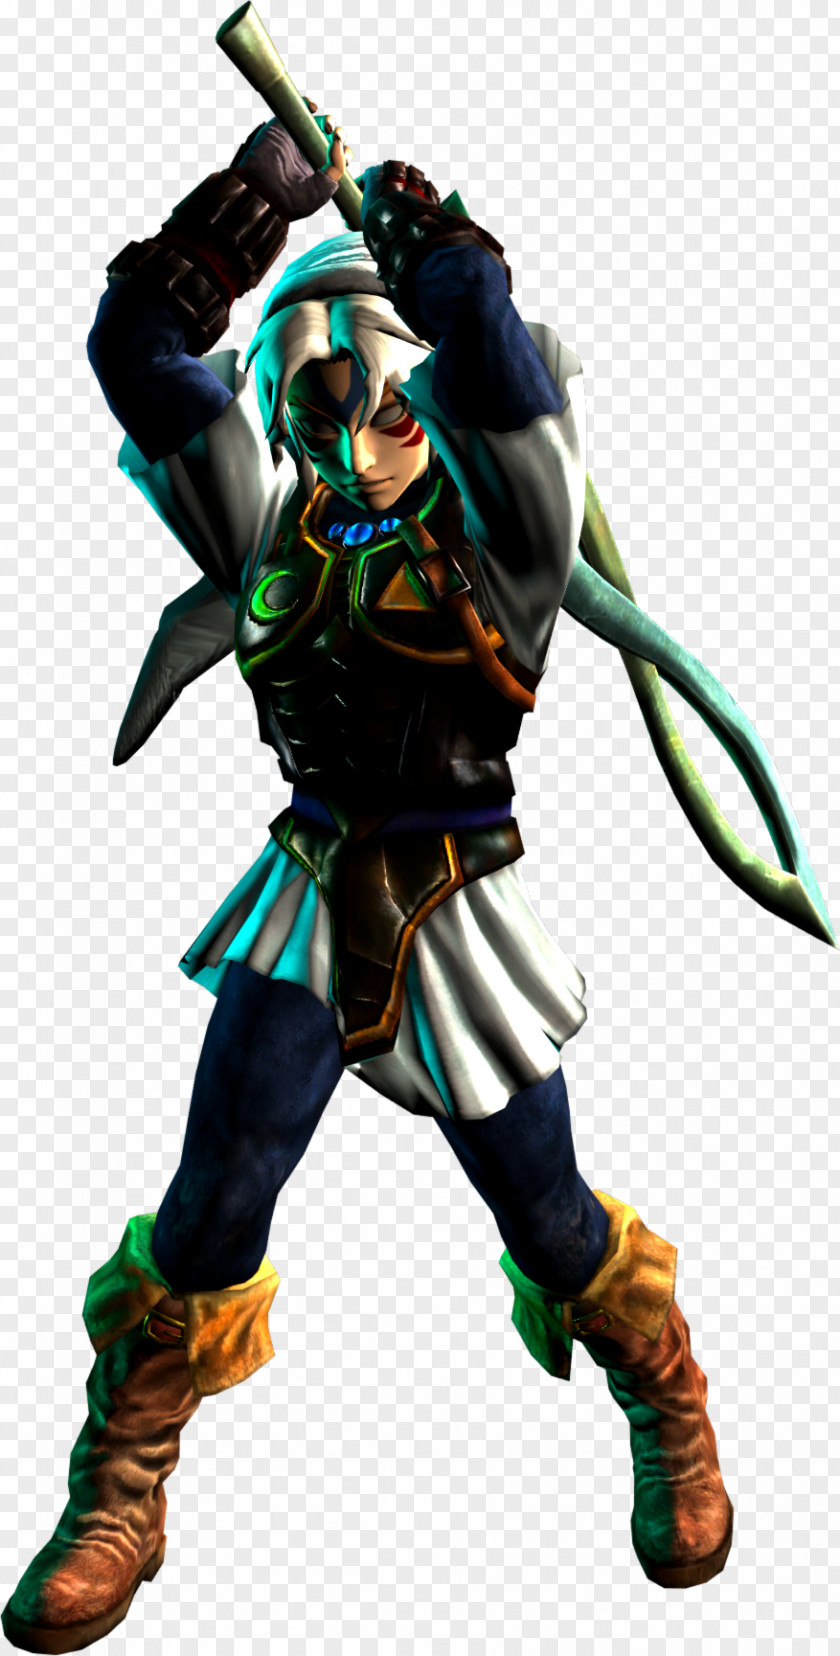 Mask The Legend Of Zelda: Majora's 3D Breath Wild Ocarina Time Hyrule Warriors PNG